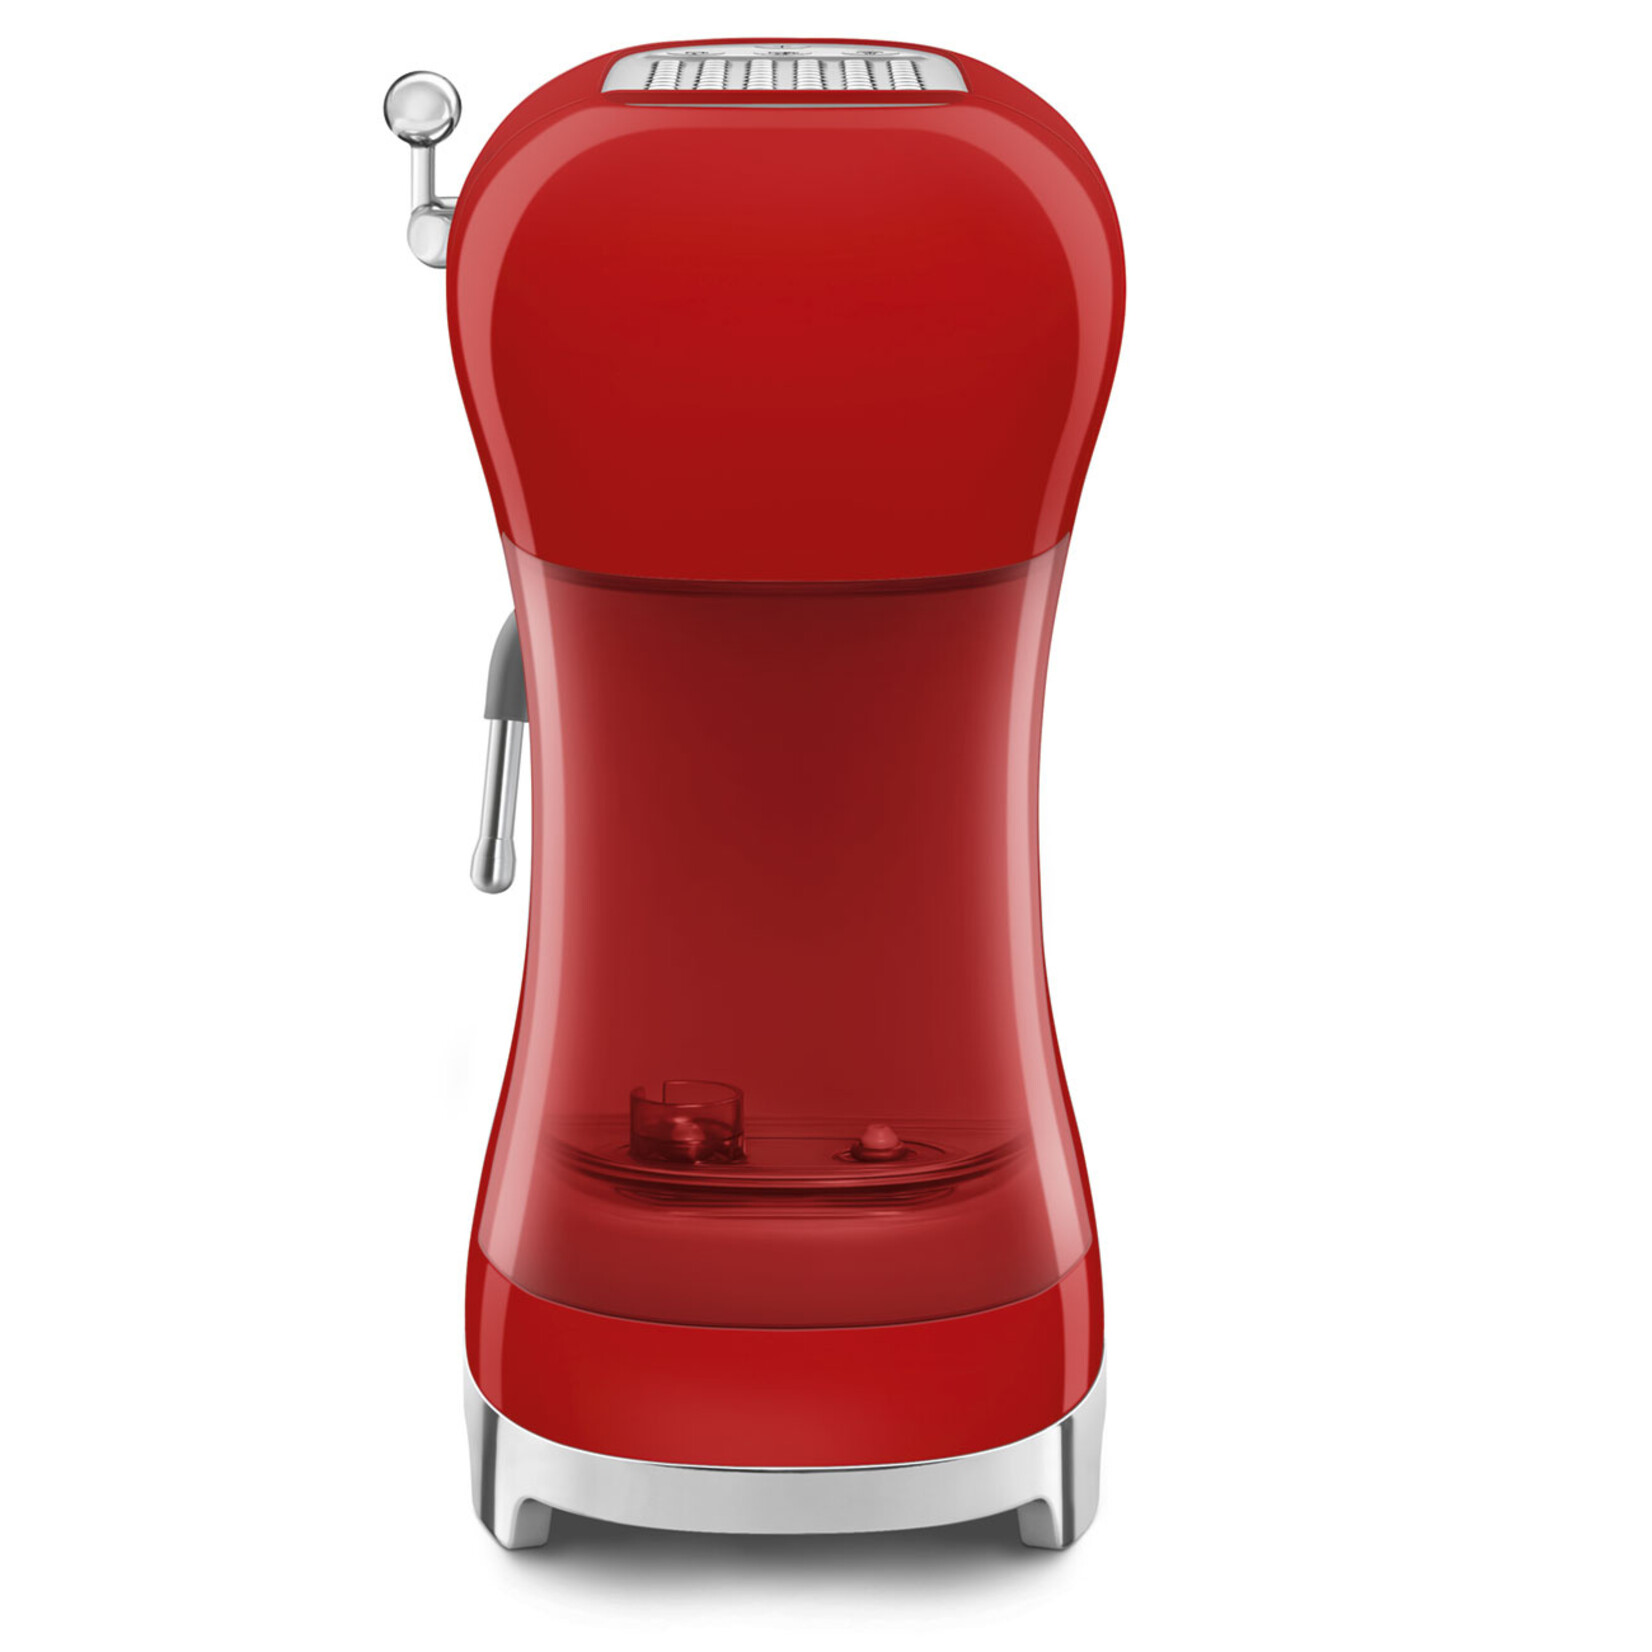 SMEG SMEG Espressomachine ECF02RDEU, rood